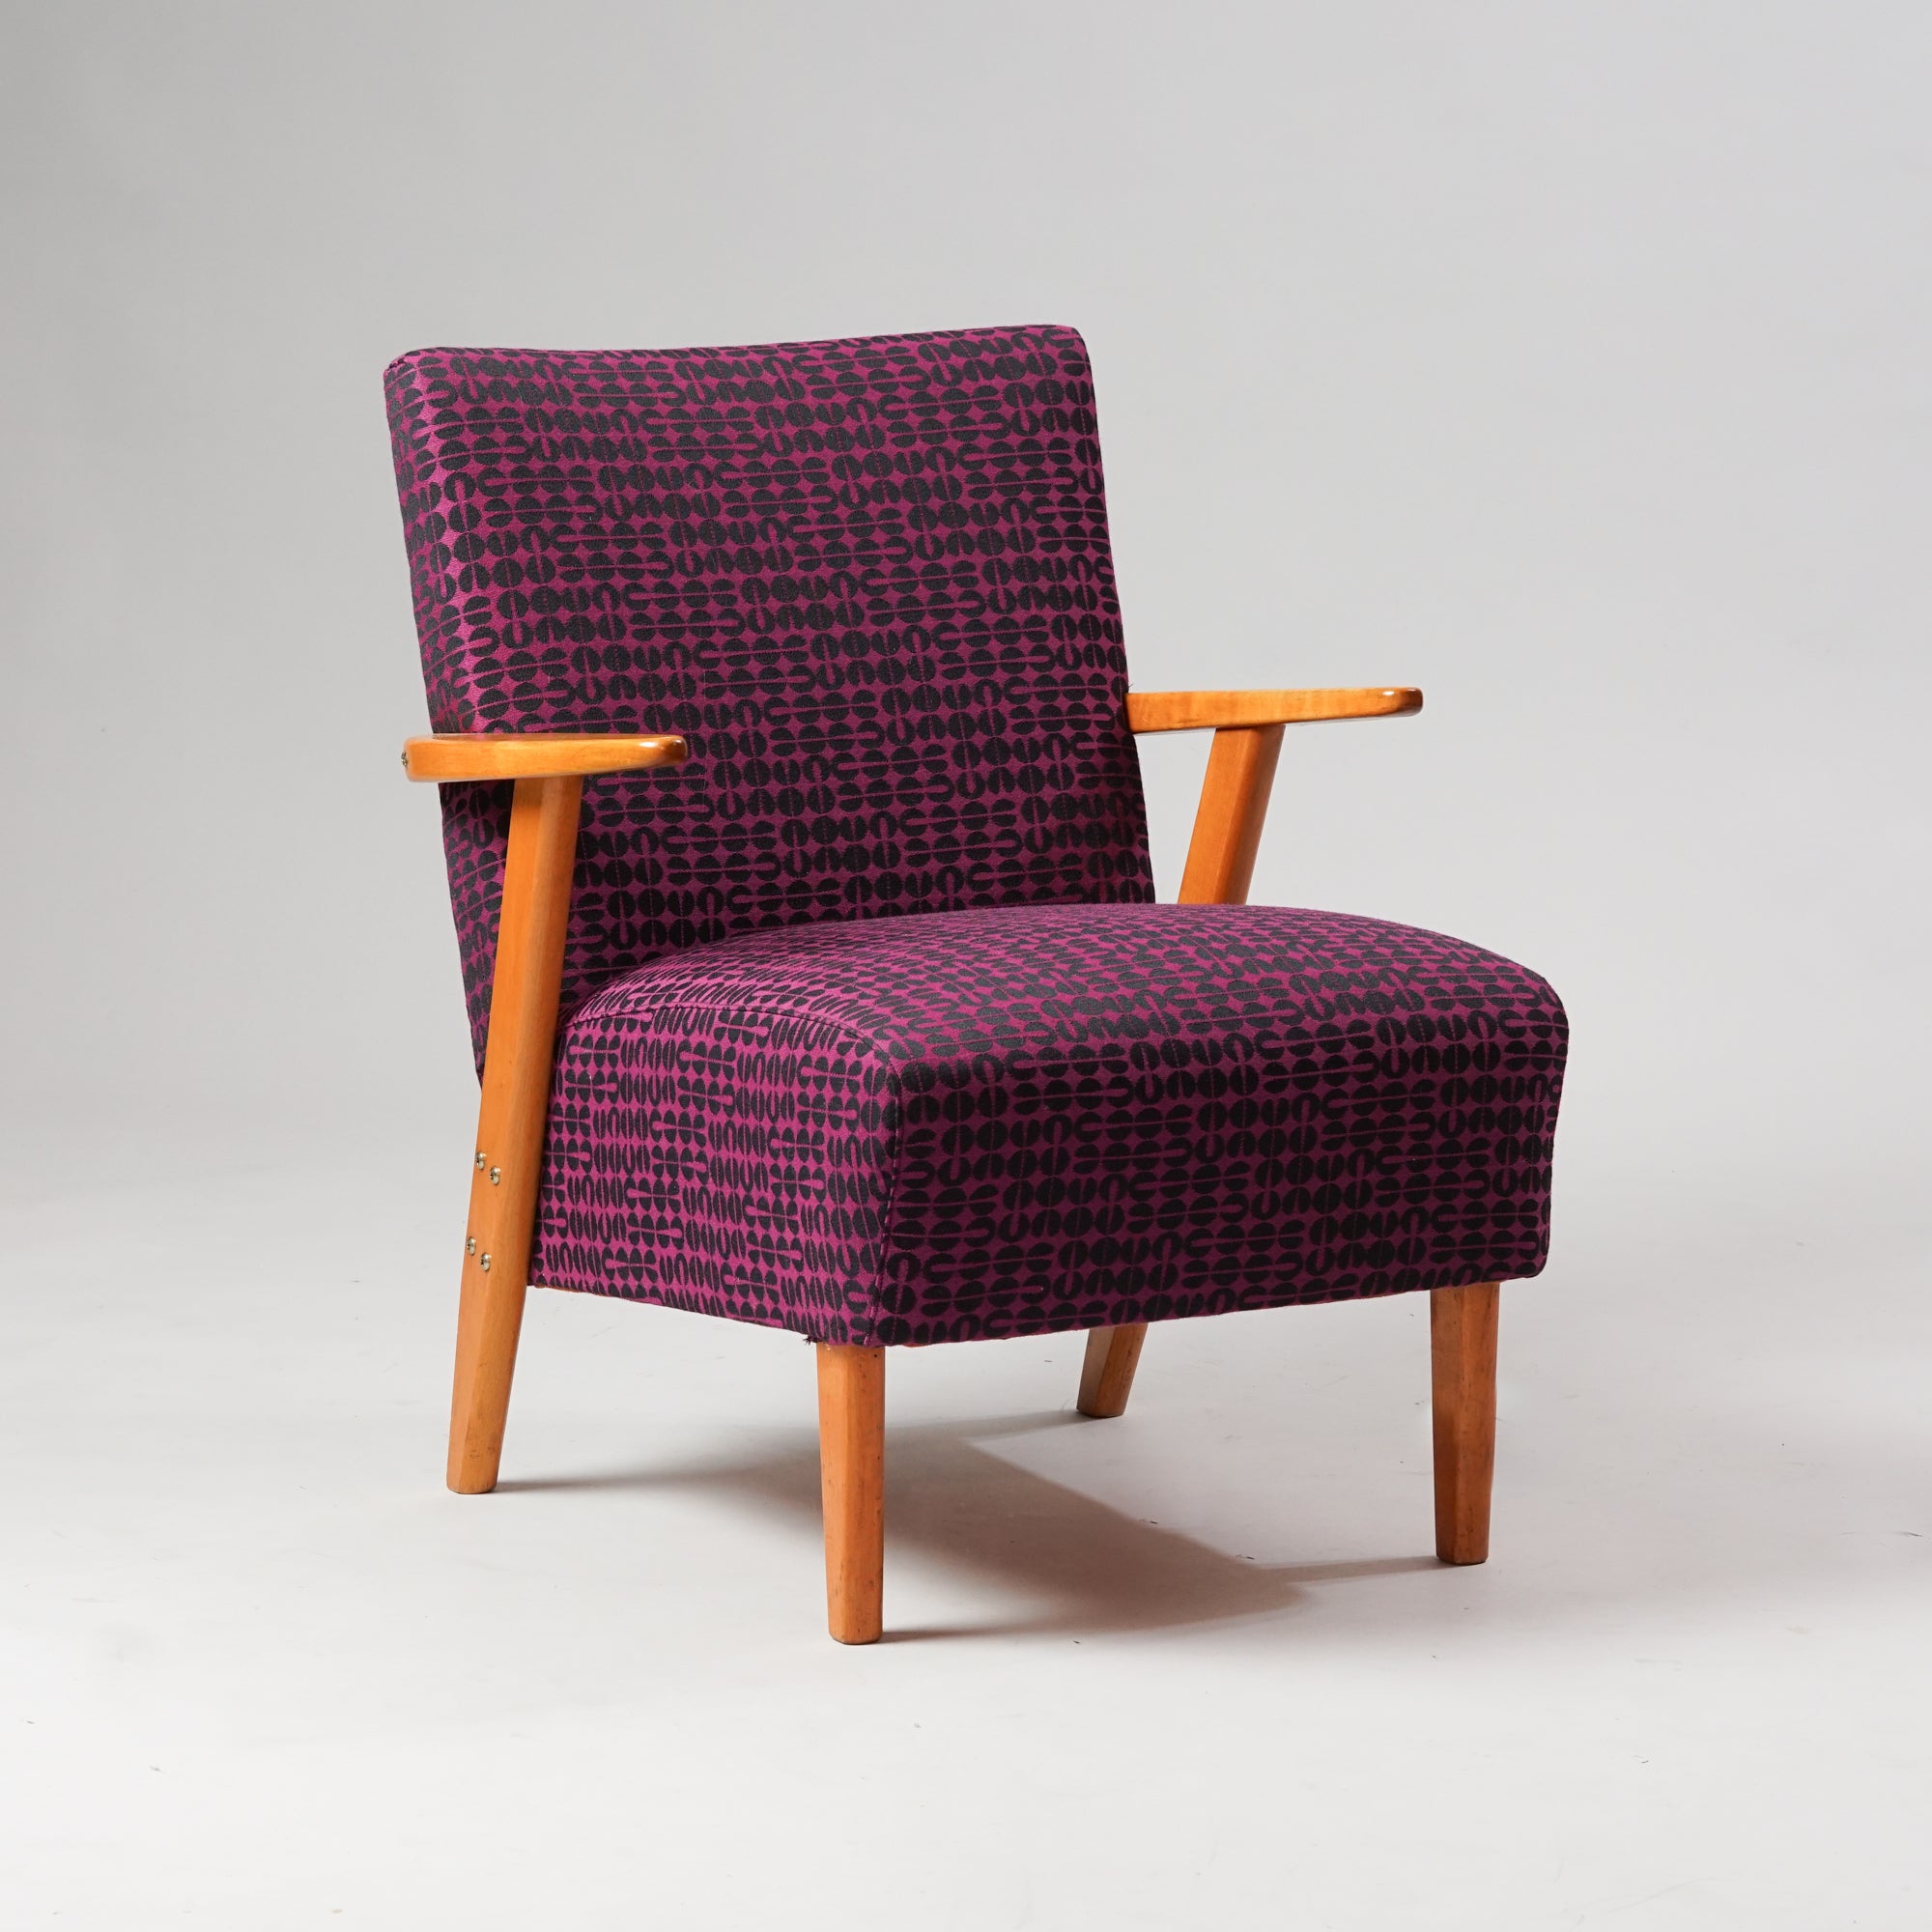 Koivurunkoinen nojatuoli, joka on verhoiltu kuviolliseen violetin ja mustan väriseen kankaaseen.